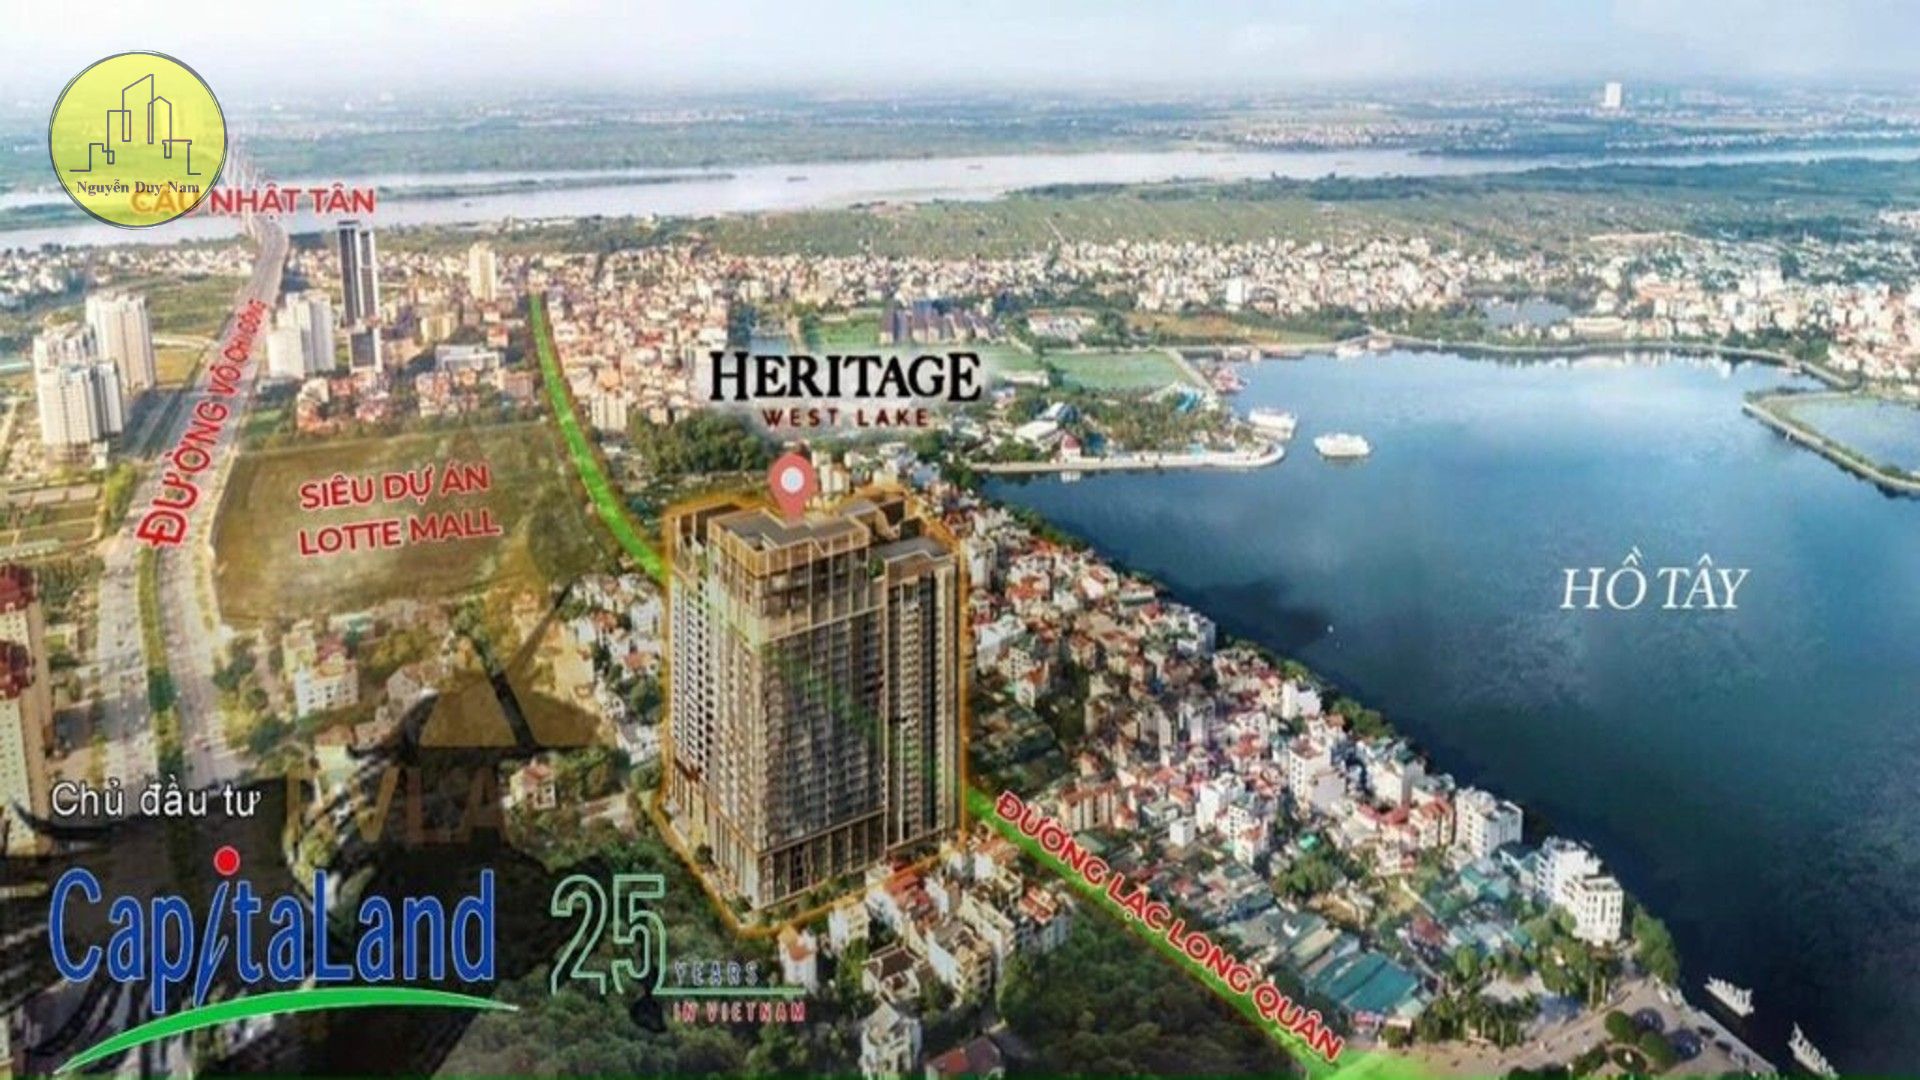 Heritage West Lake Capitaland Việt Nam 